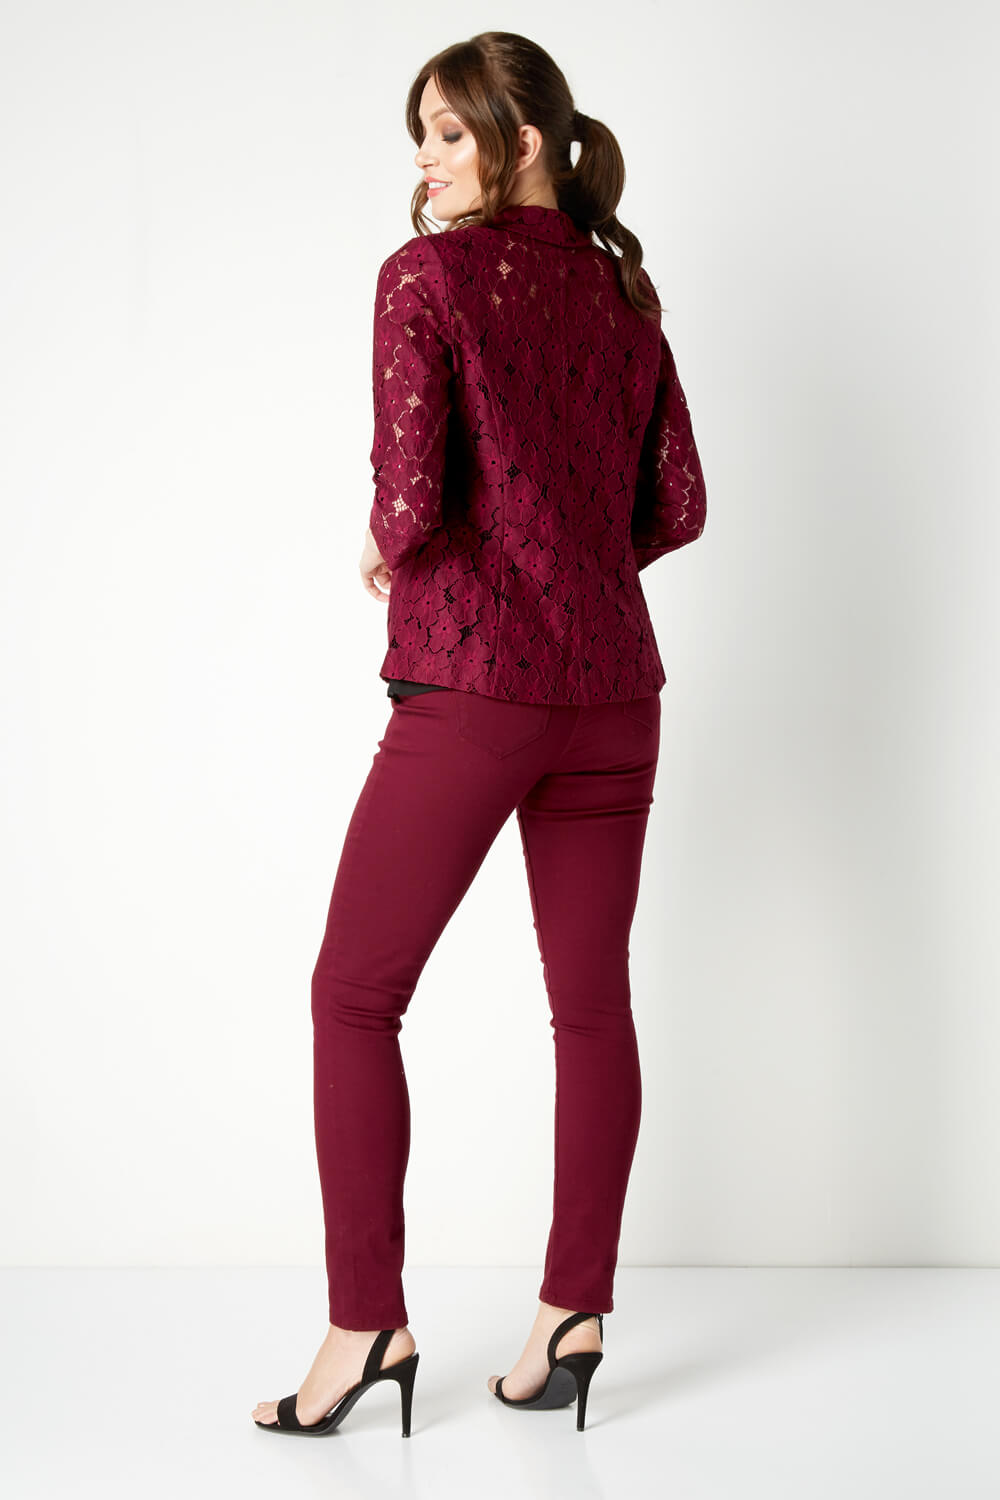 Burgundy Lace 3/4 Length Sleeve Jacket, Image 2 of 4